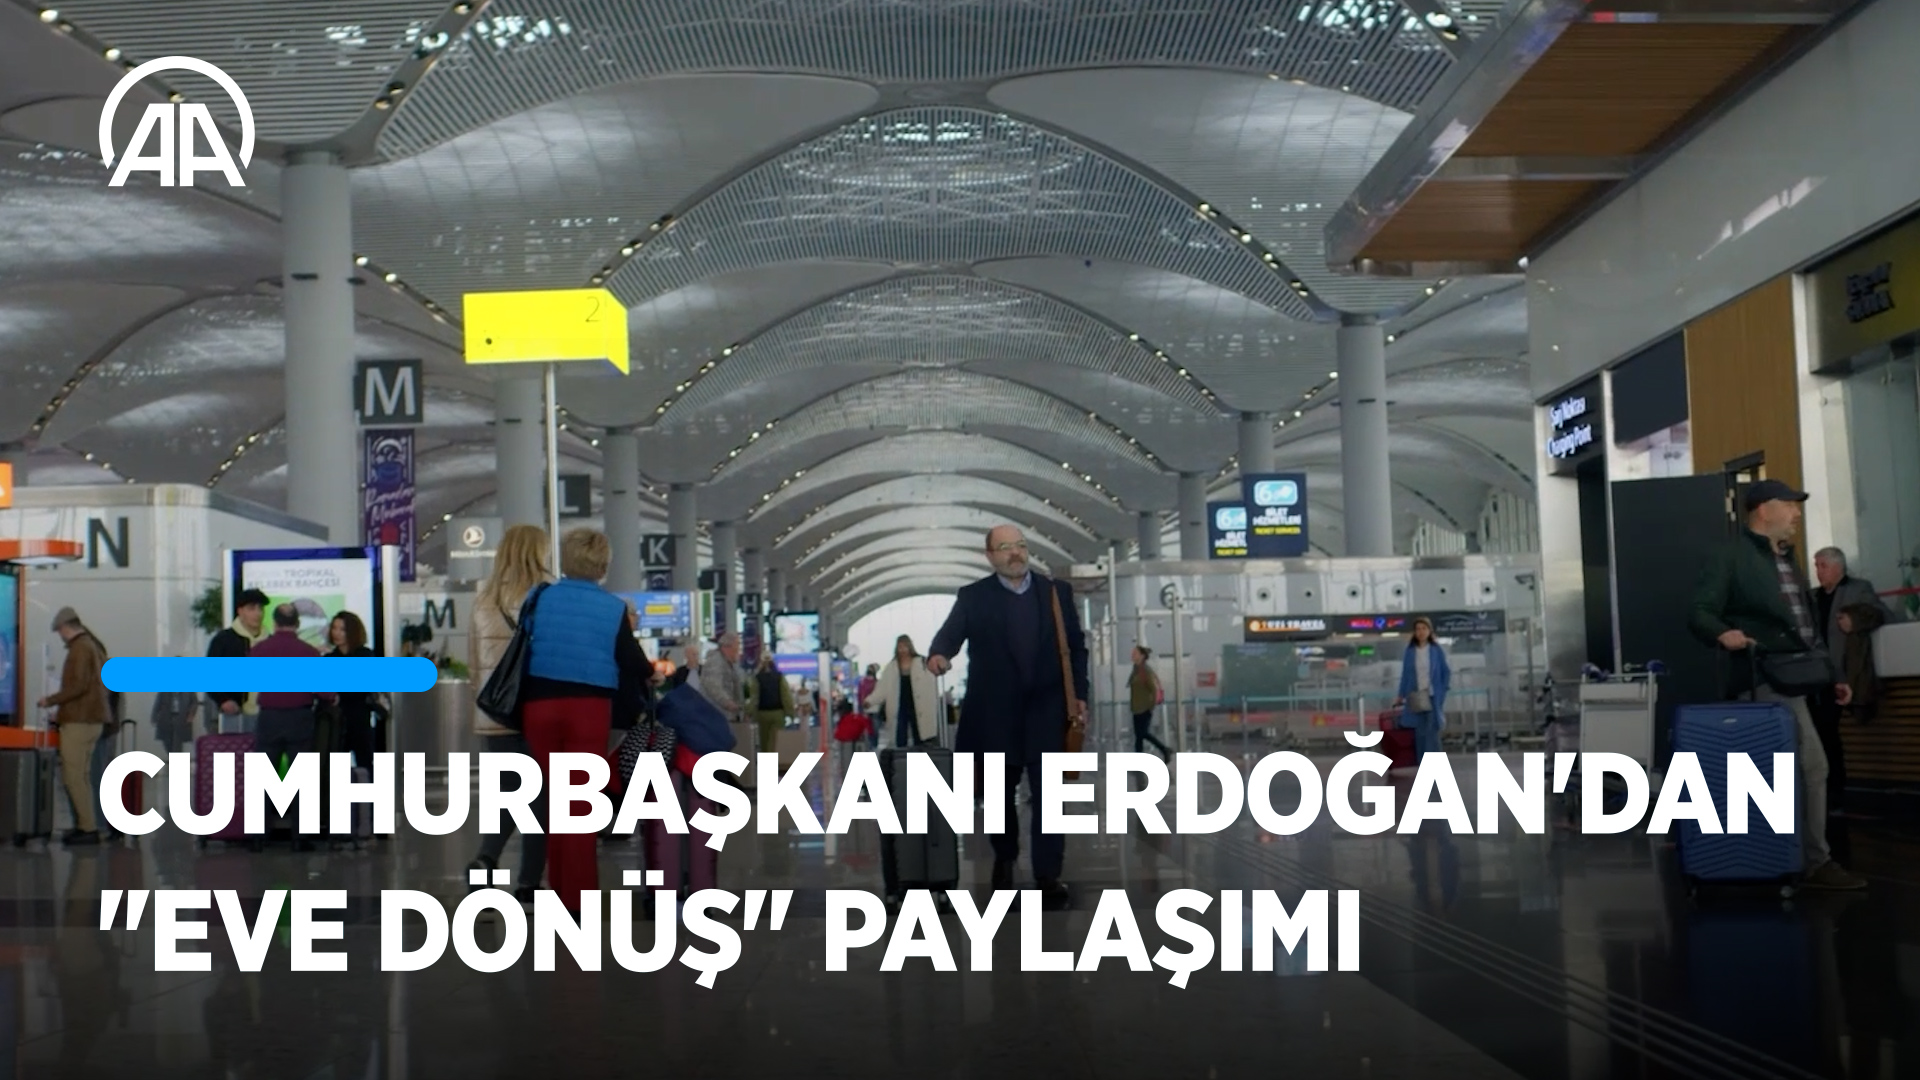 Cumhurbaşkanı Erdoğan'dan "eve dönüş" paylaşımı